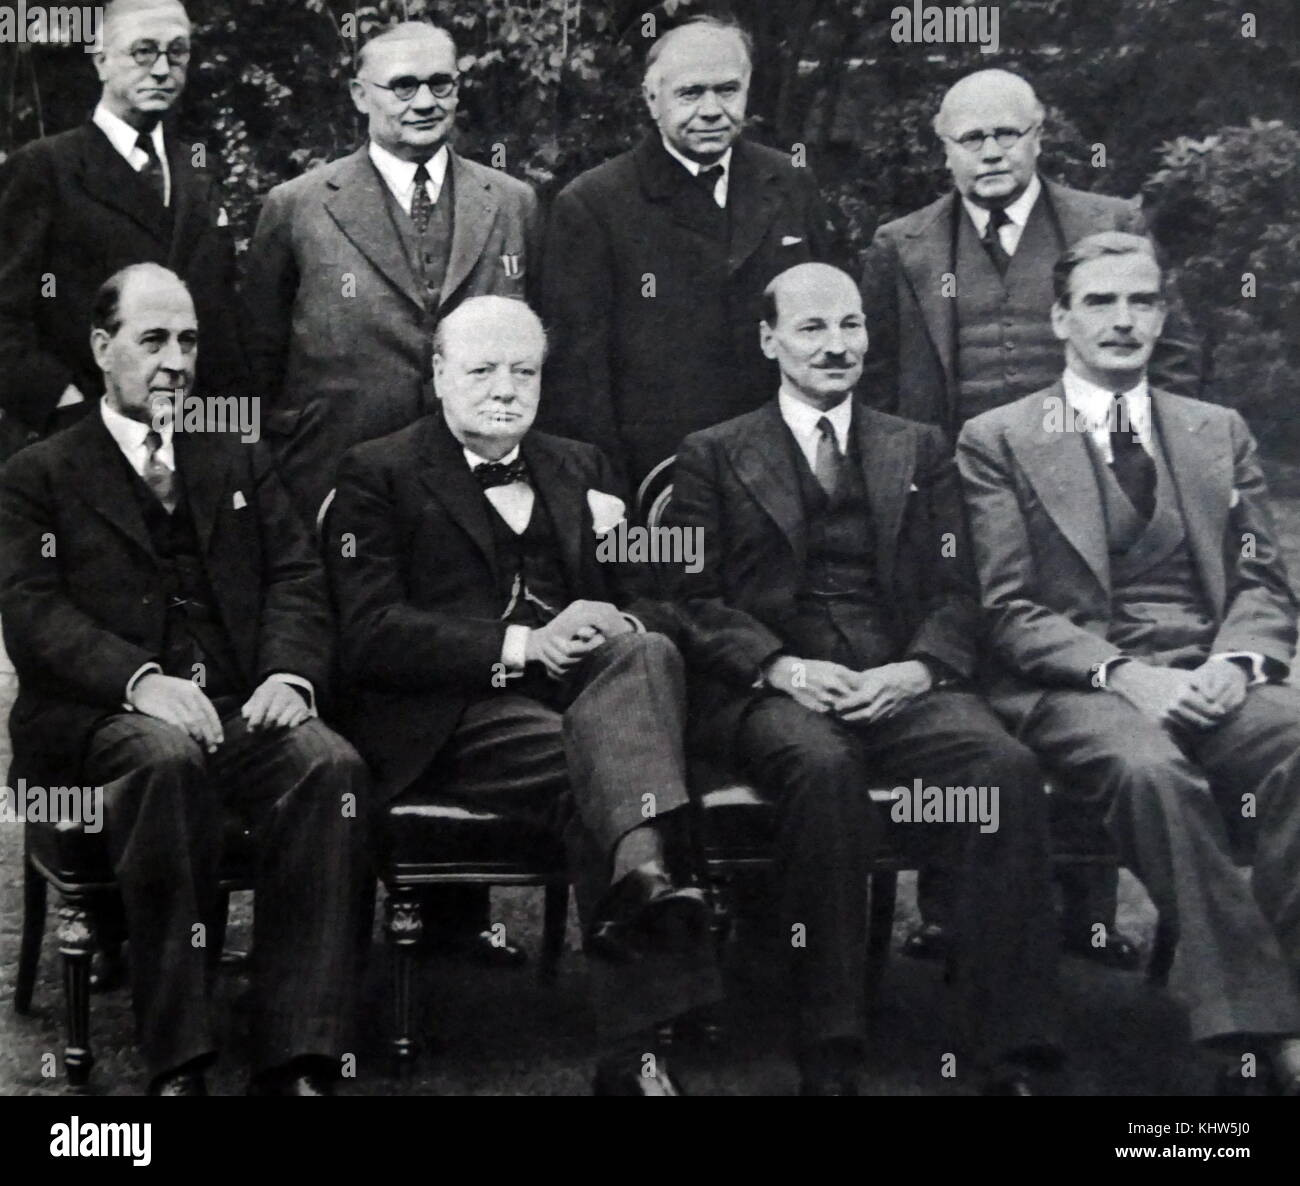 Photographie de Sir Winston Churchill assis aux côtés d'autres membres de son Cabinet de guerre. (Rangée arrière, de gauche à droite) M. Arthur Greenwood (1880-1954) Leader adjoint du parti travailliste, M. Ernest Bevin (1881-1951) Ministre du Travail ; Max Aitken, premier baron Beaverbrook (1879-1964) Ministre de la production d'aéronefs ; Sir Kingsley Wood (1881-1943), Chancelier de l'Échiquier. (Rangée avant, de gauche à droite) John Anderson, 1er vicomte Waverley (1882-1958) Lord Président du Conseil ; Sir Winston Churchill (1874-1965) Premier Ministre du Royaume-Uni ; Clement Attlee (1883-1967) Lord du Sceau privé. Banque D'Images